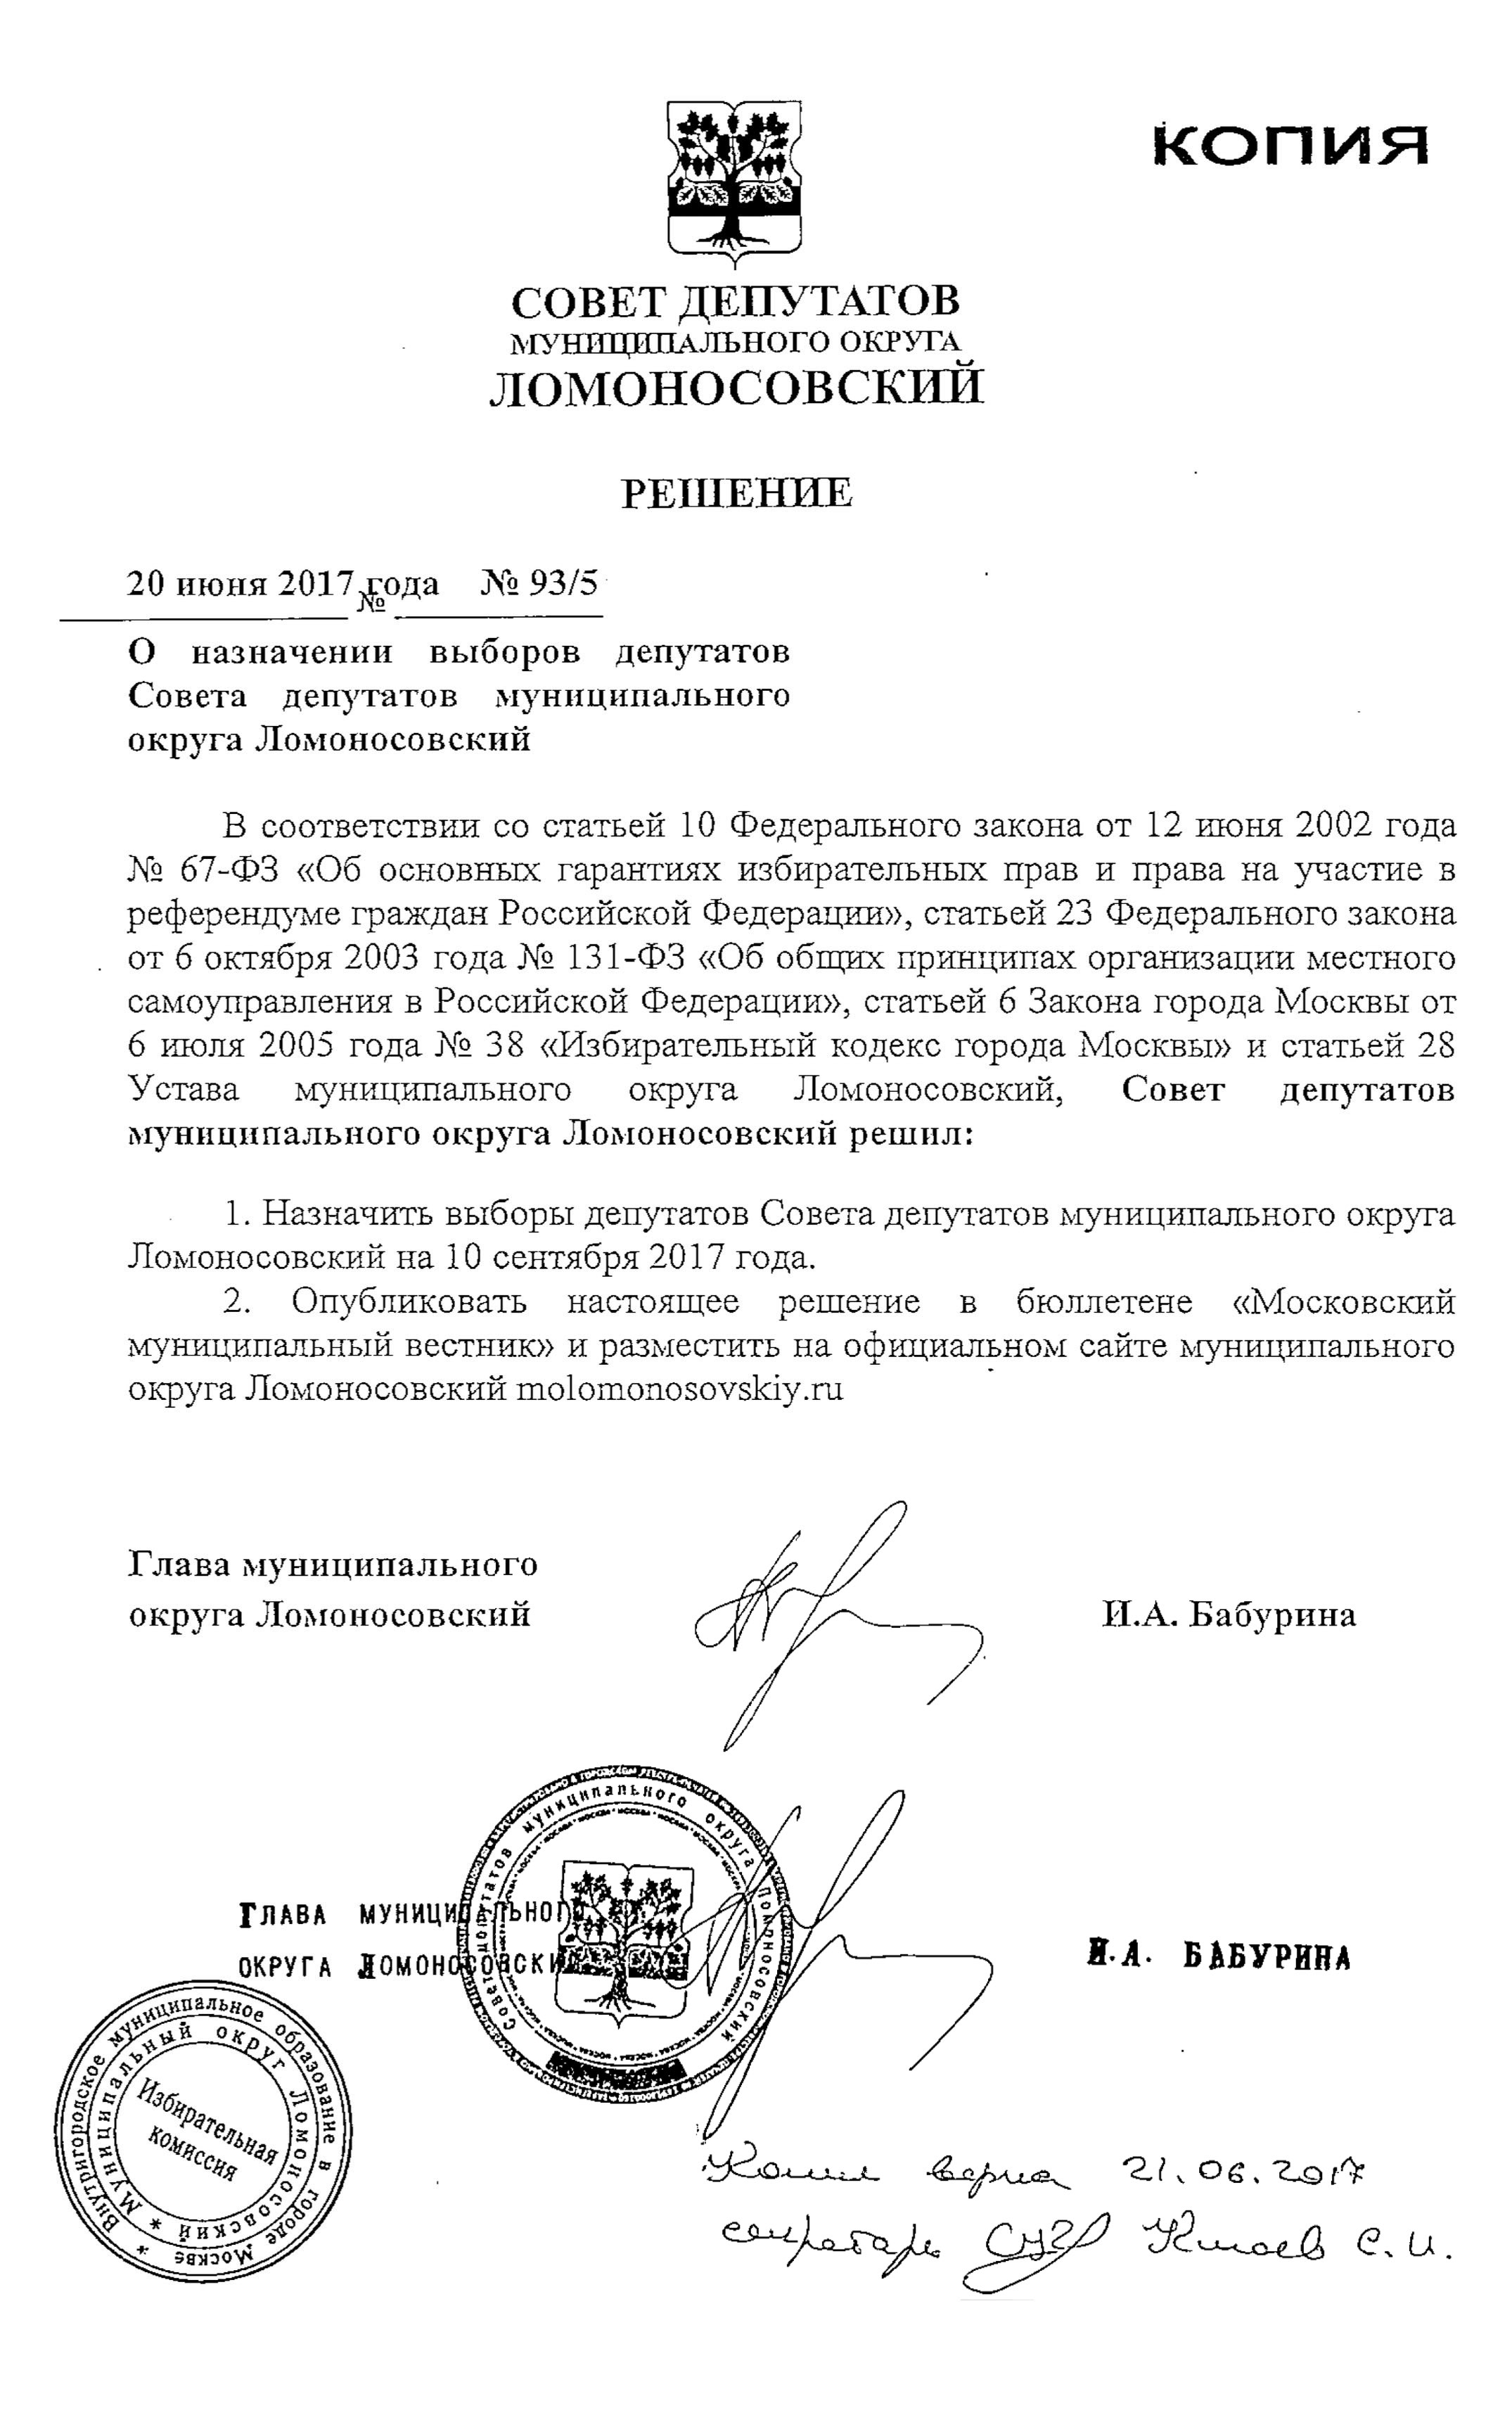 Это решение совета депутатов муниципального округа Ломоносовский в Москве о назначении выборов на 10 сентября 2017 года